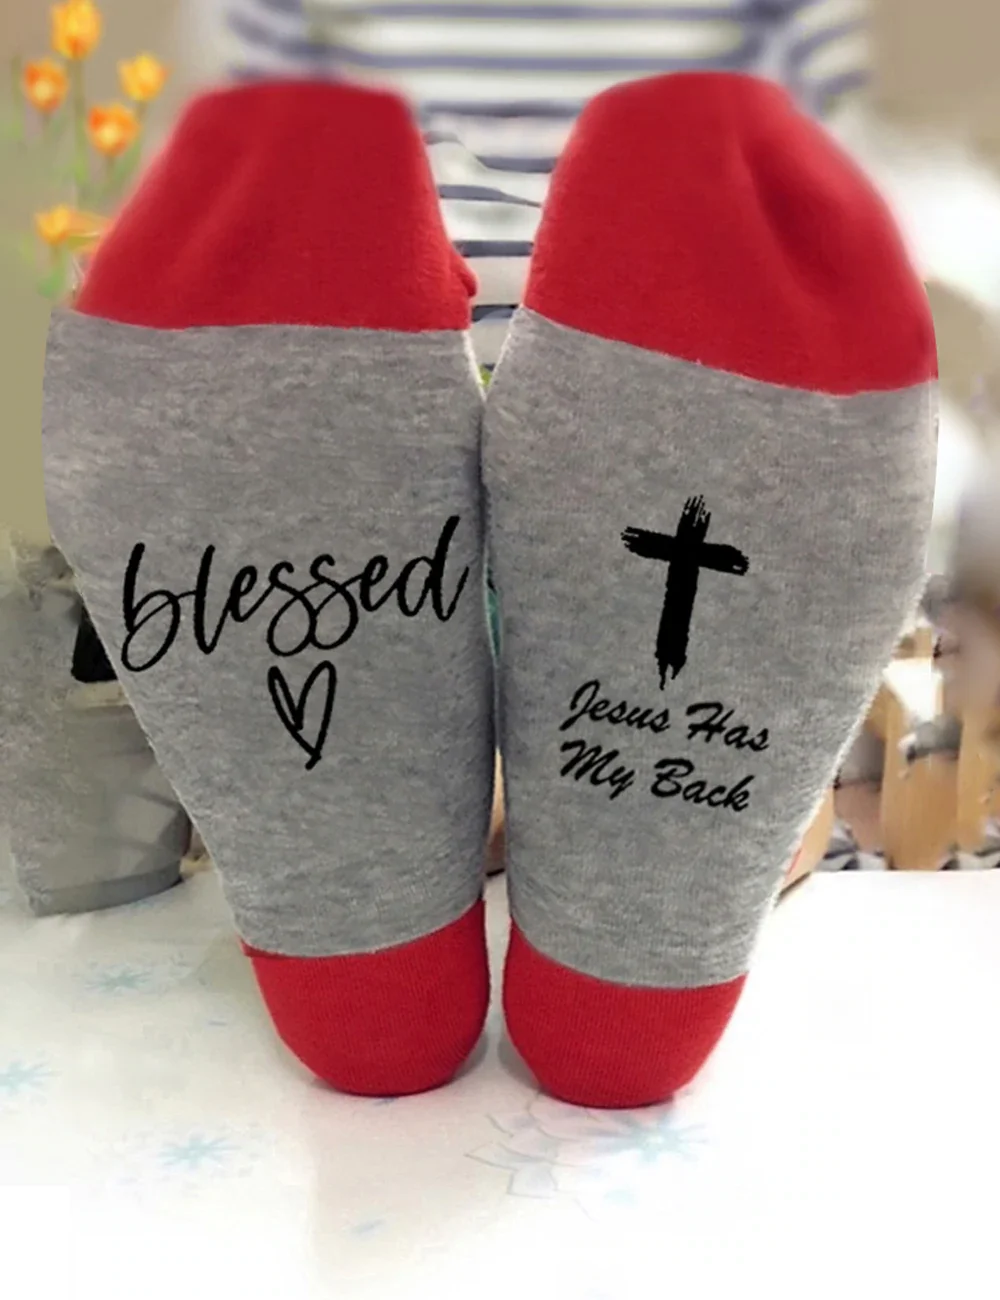 Blesses Heart Socks